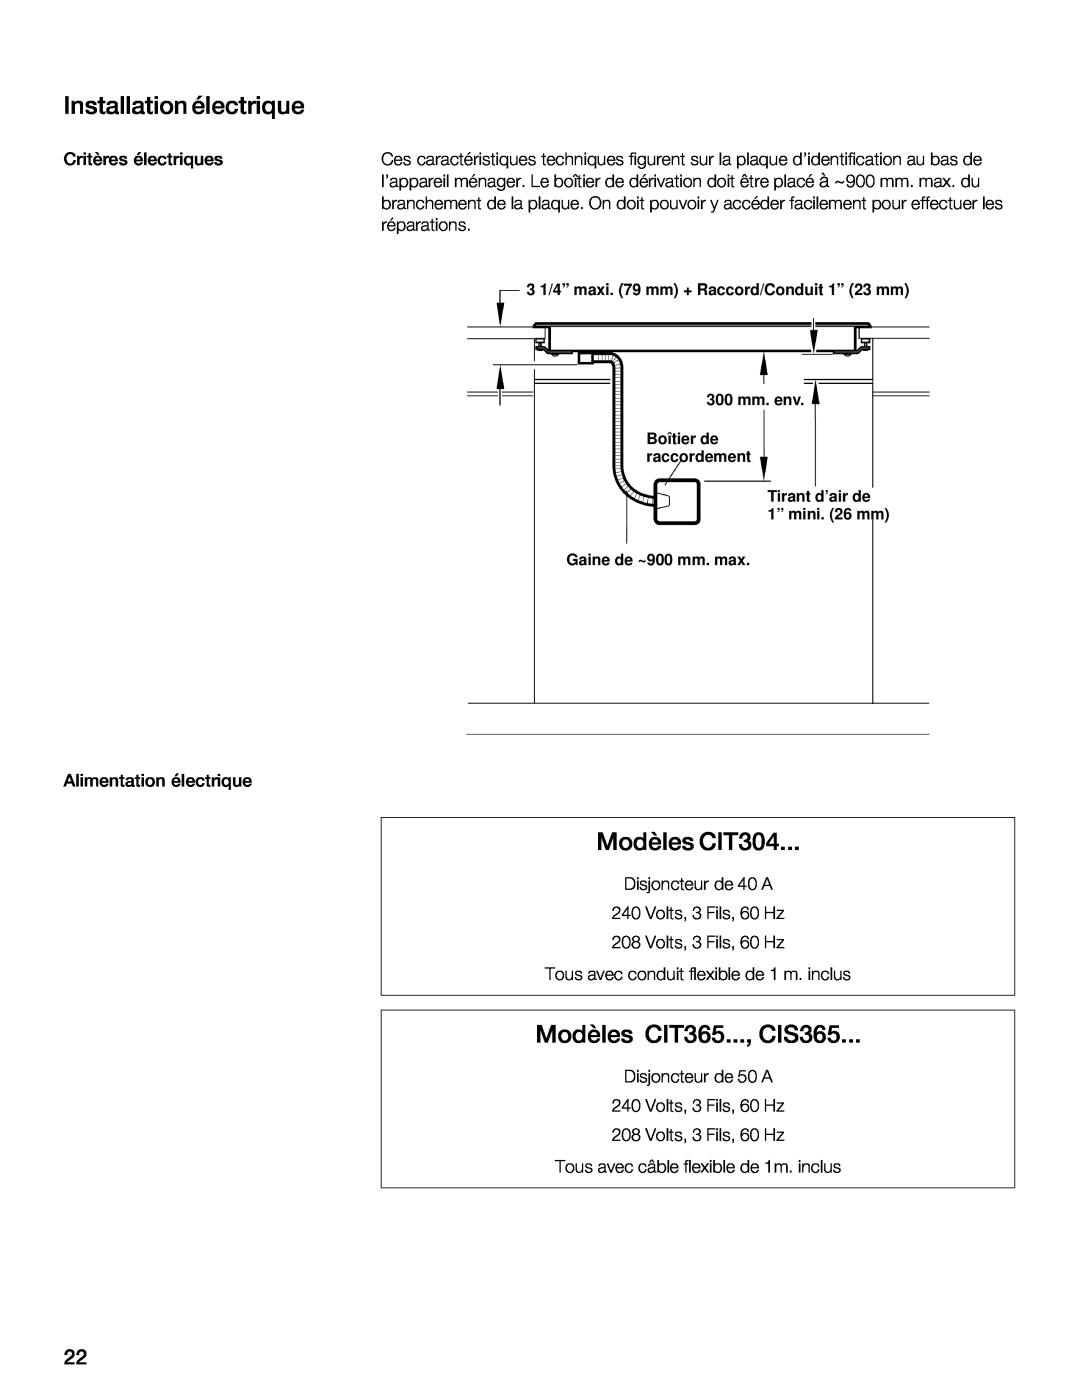 Thermador CIS365 installation instructions Installation électrique, Modèles, CIT365, CIT304 